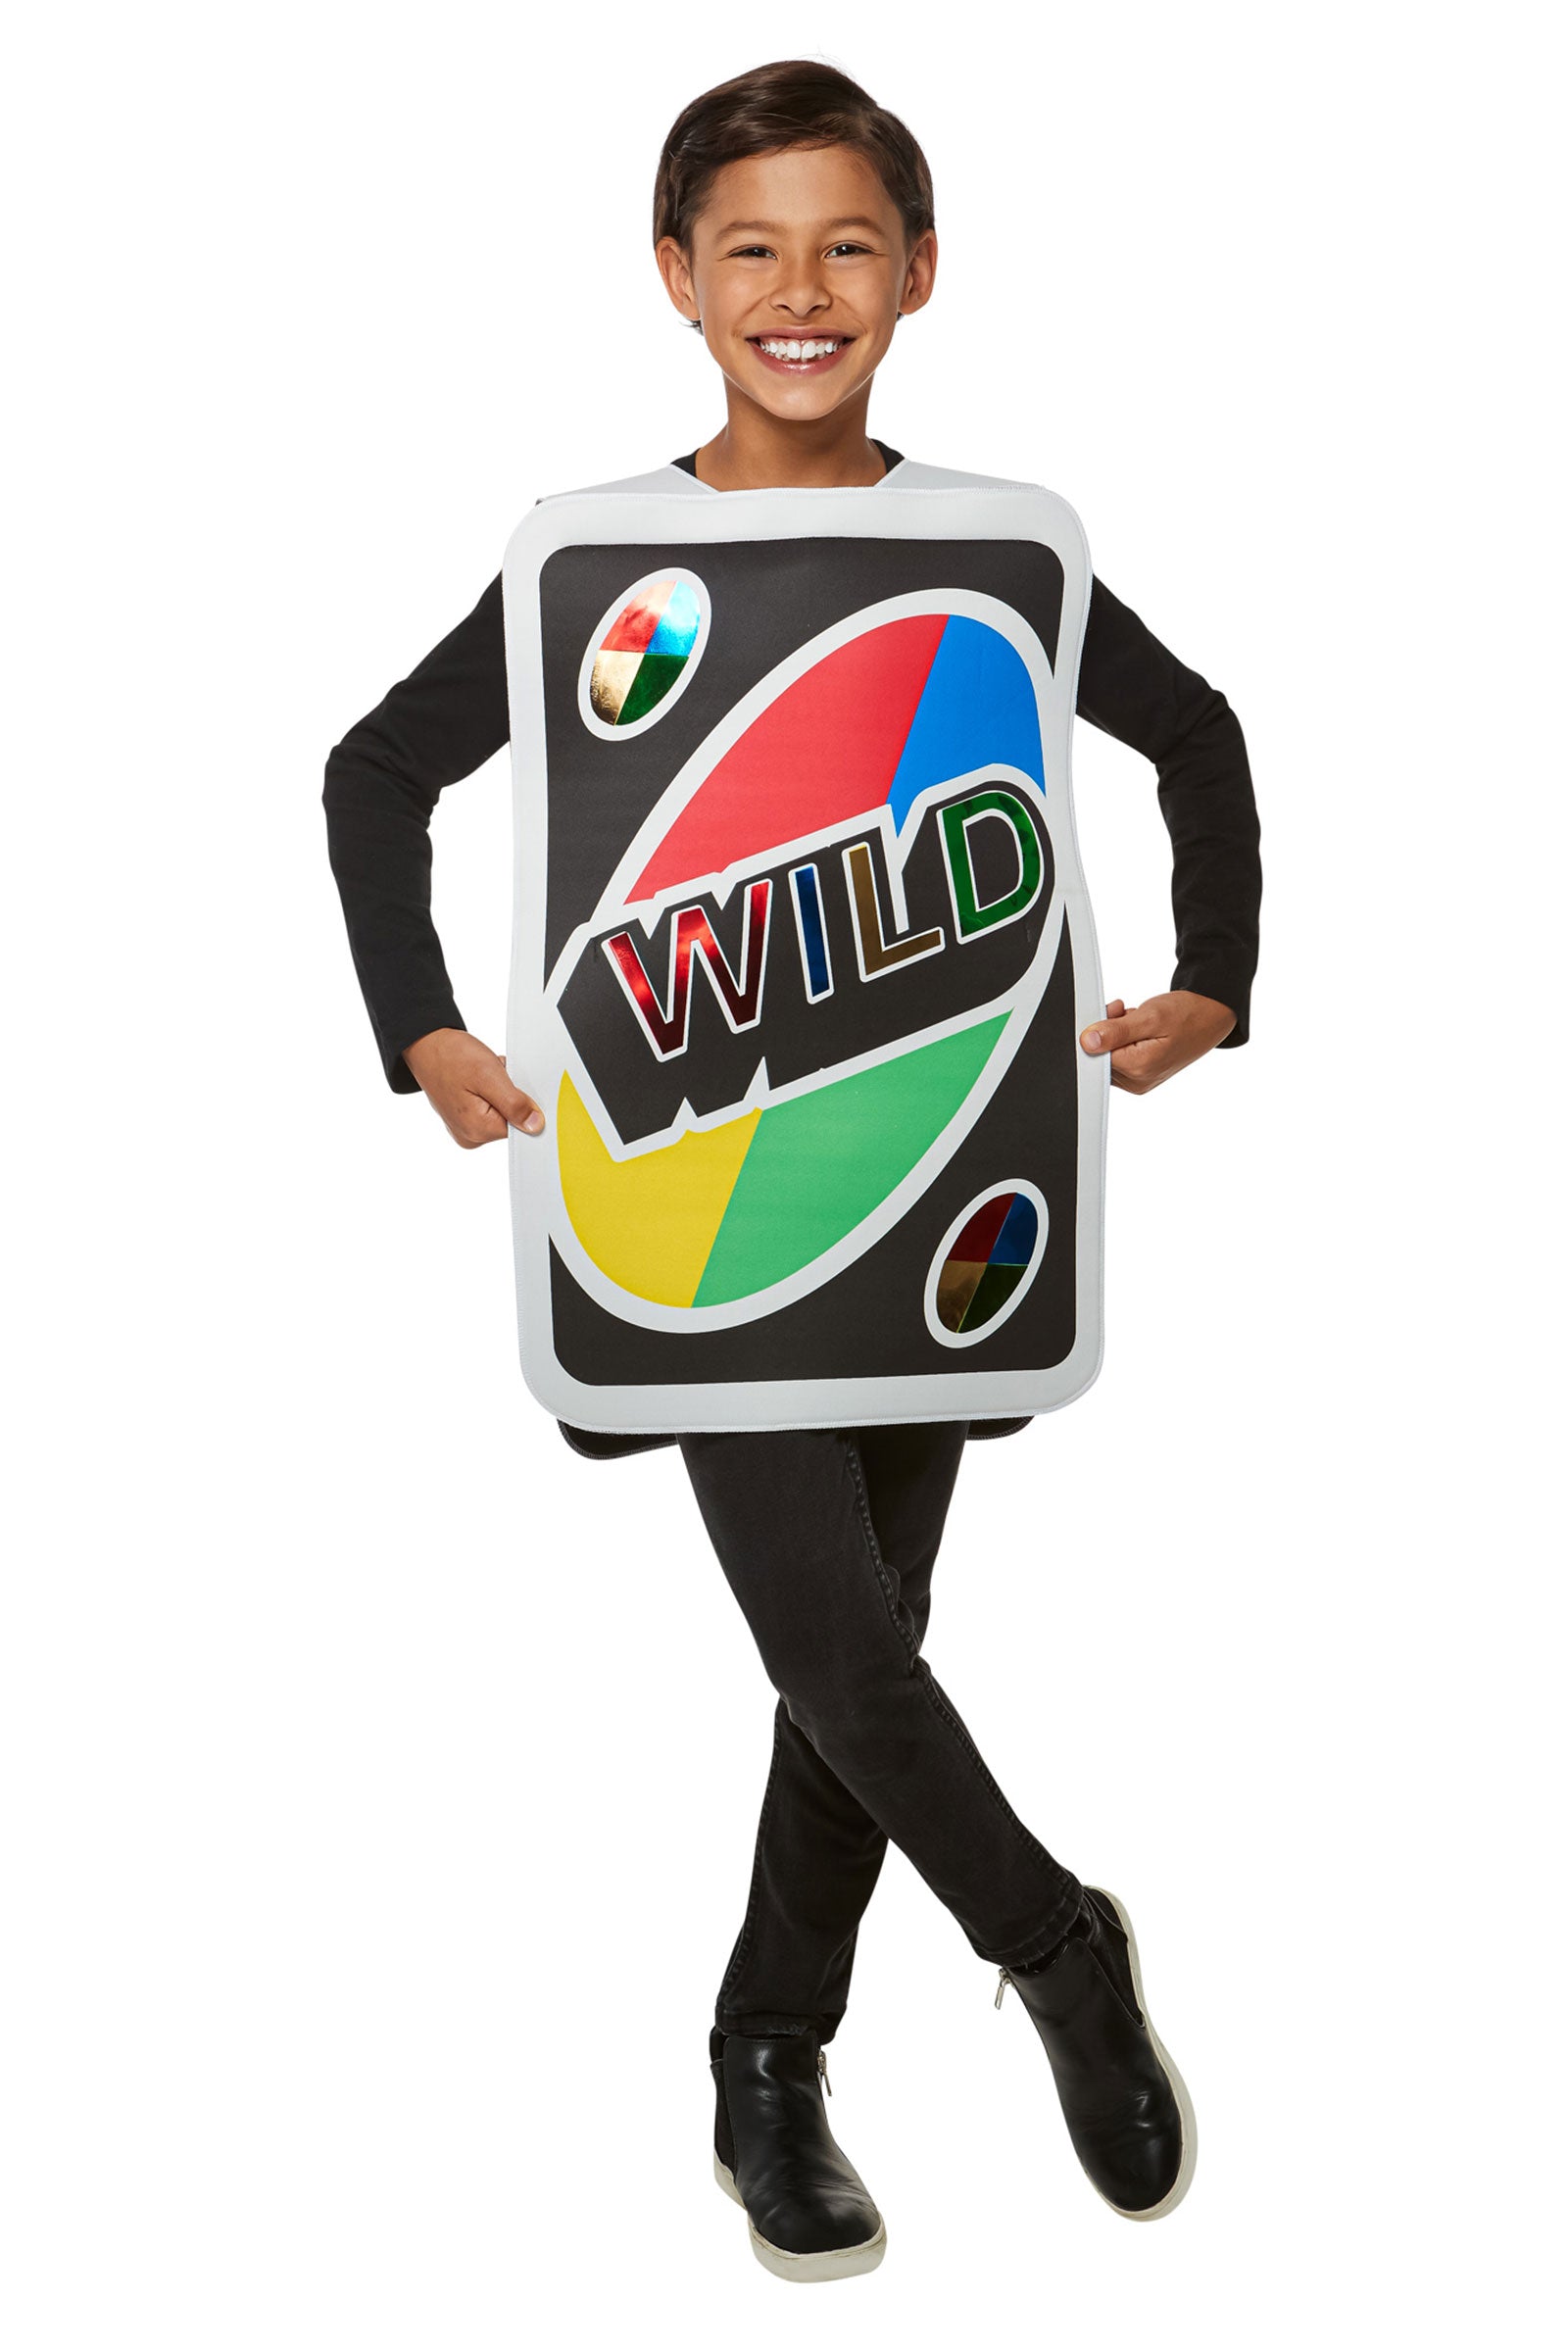 Uno Wild Card Child Costume